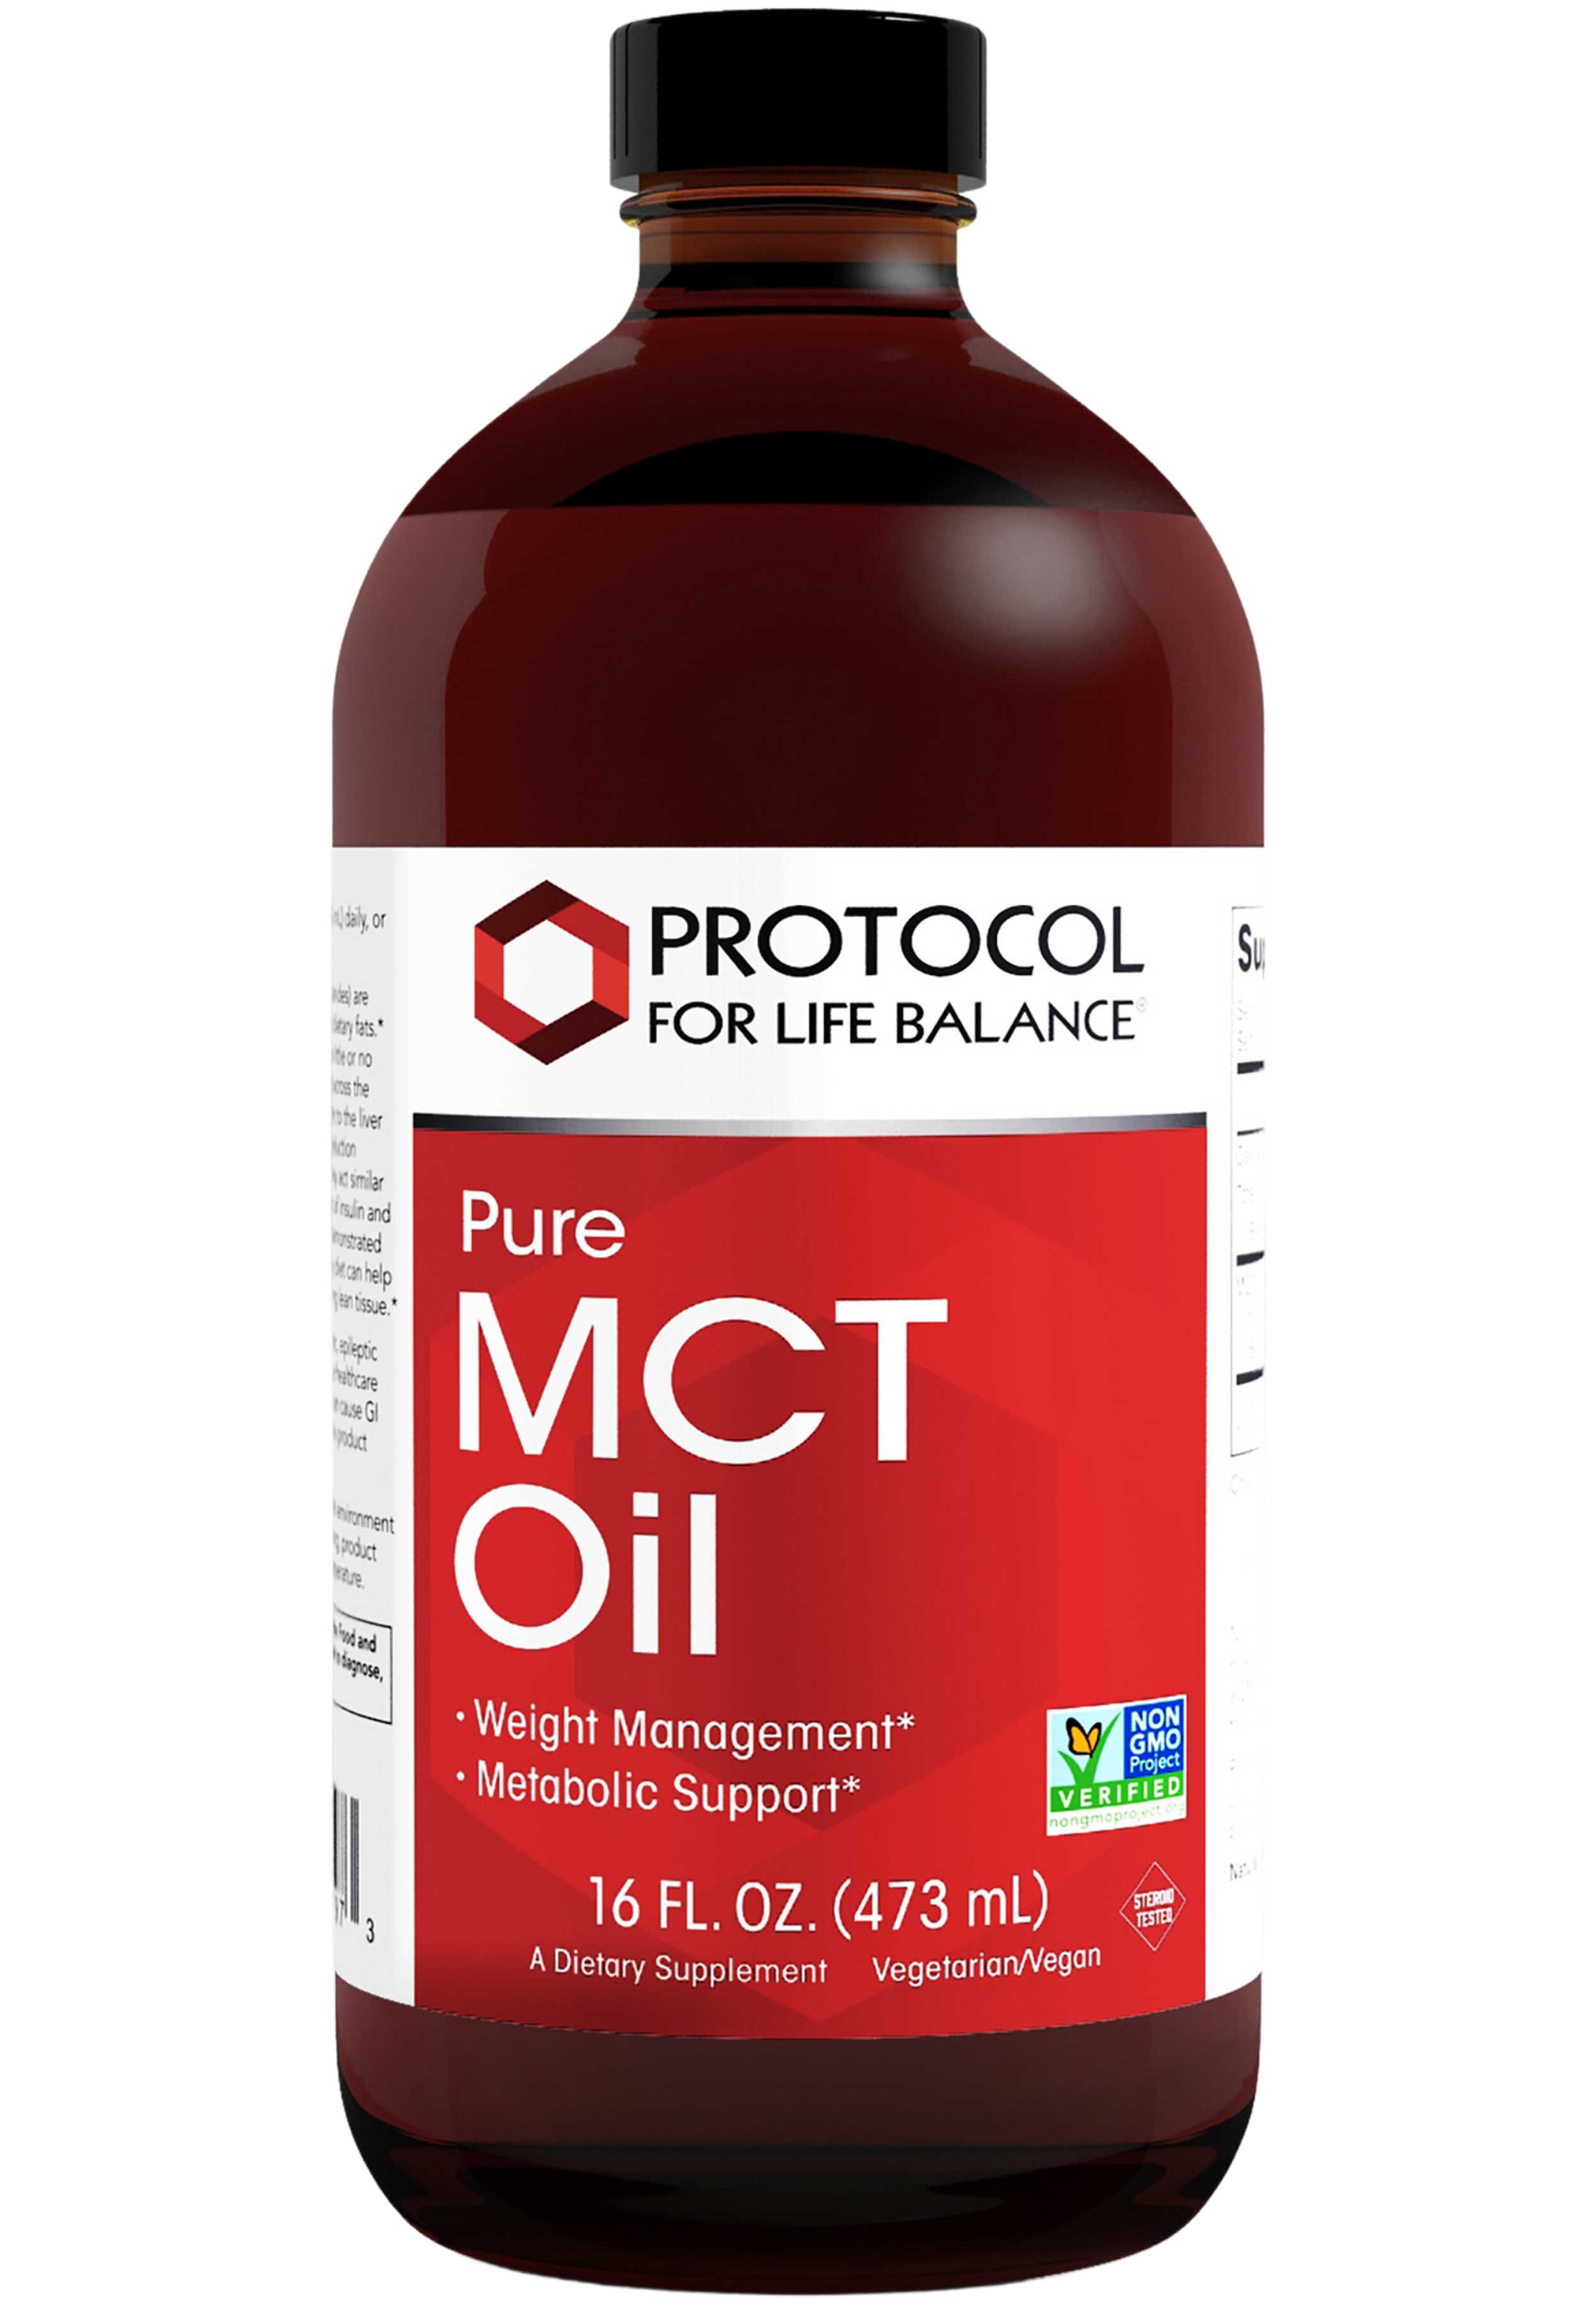 Protocol for Life Balance Pure MCT Oil